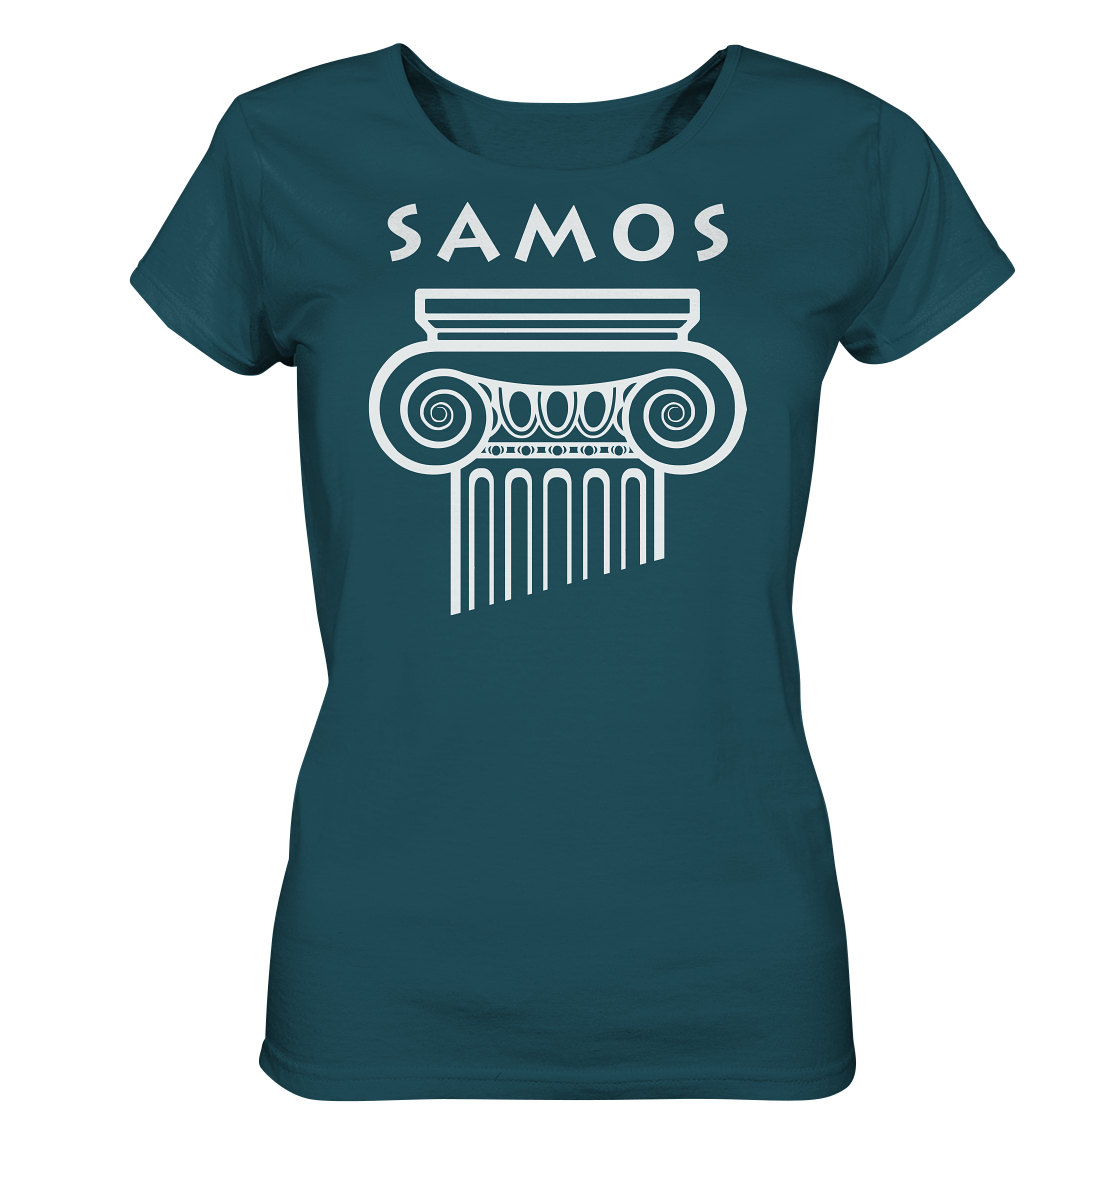 Samos Griechische Säule - Ladies Organic Shirt